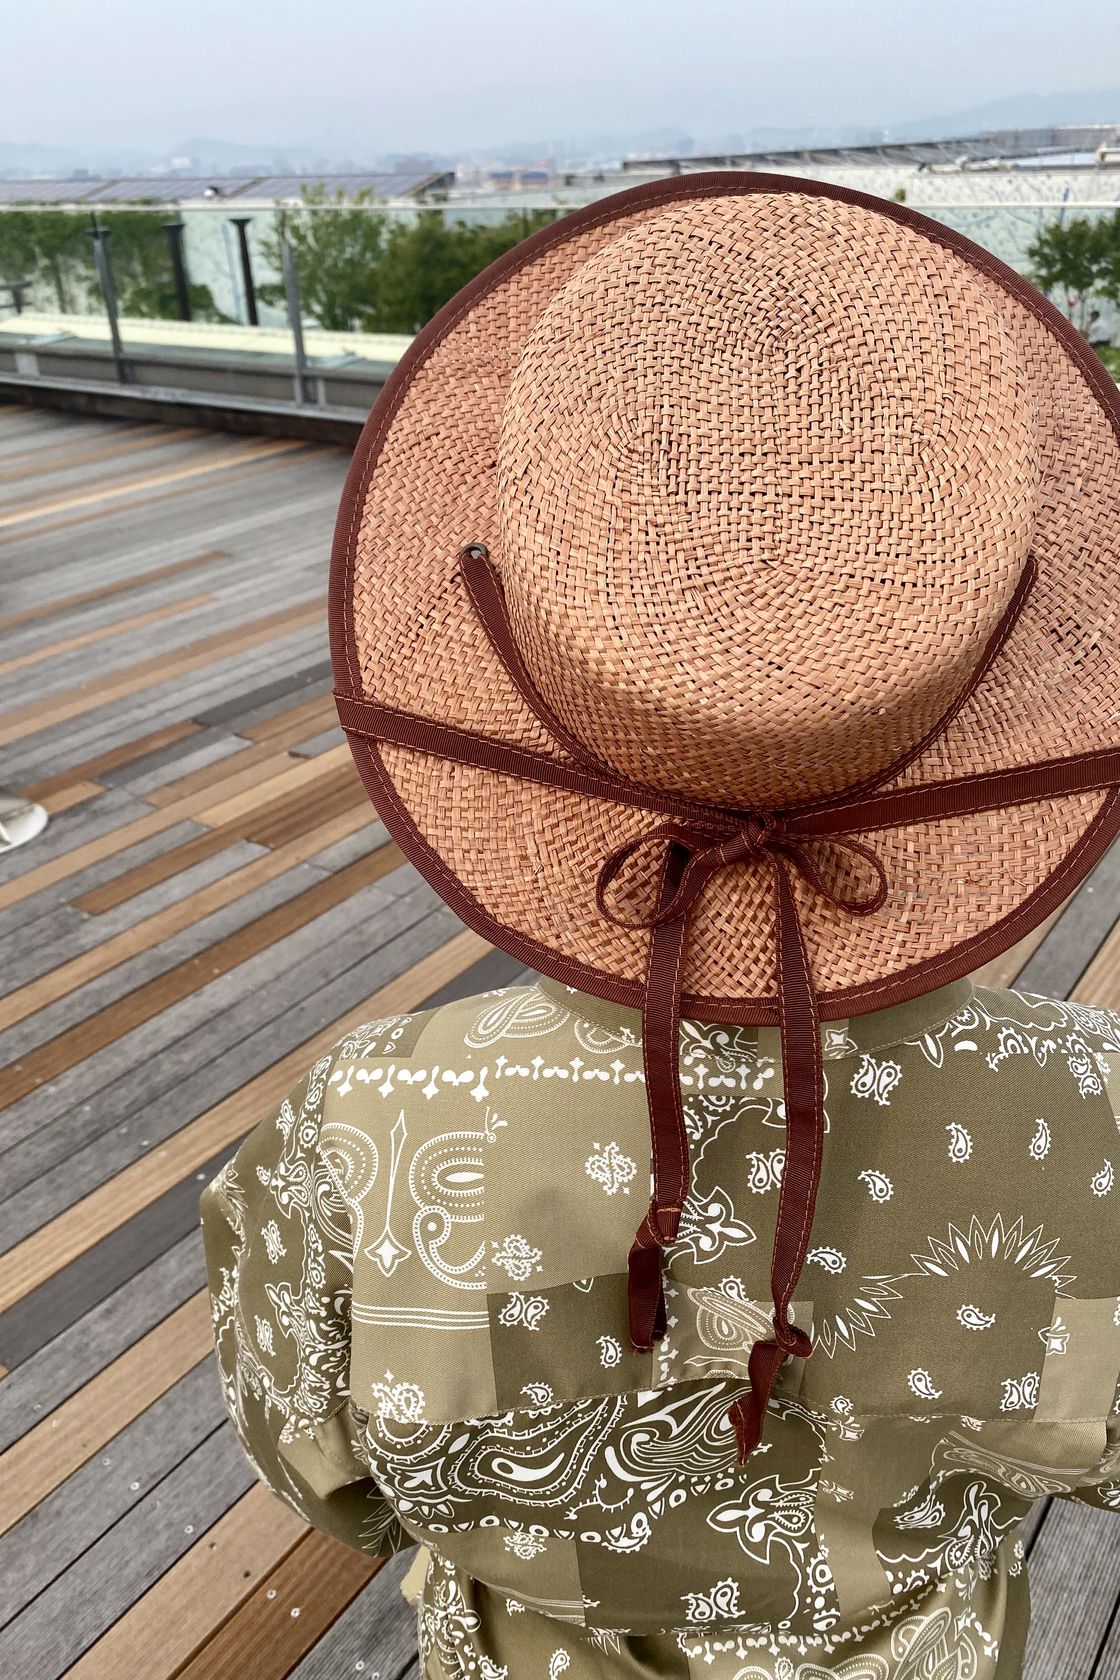 リボン×カンカン帽 - Snap |OVERRIDE